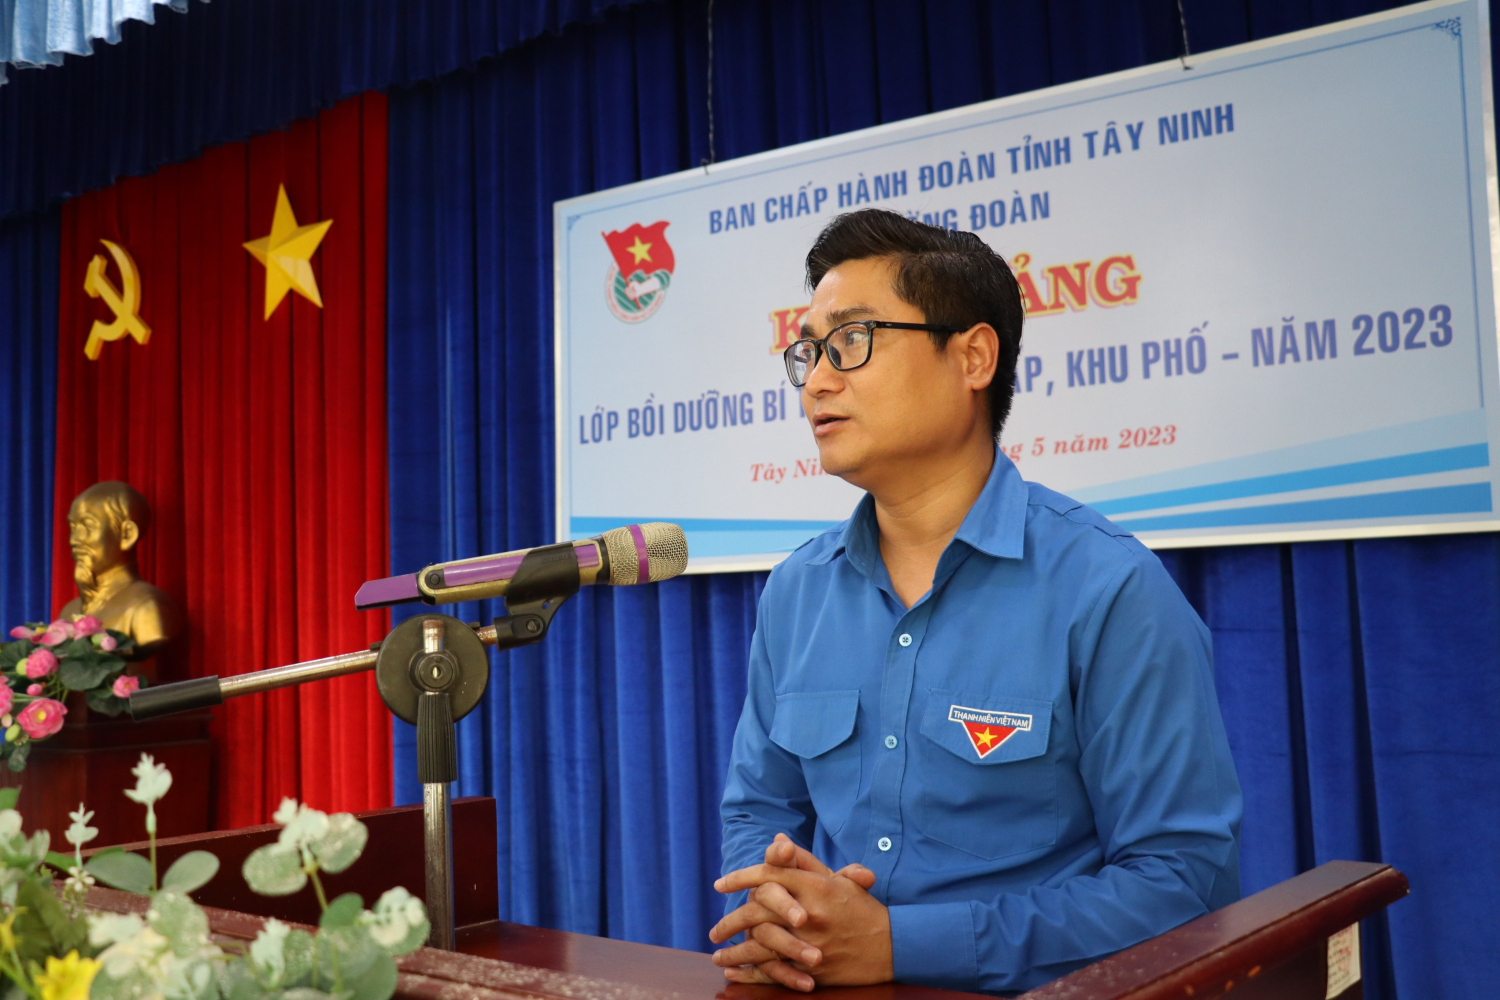 Tây Ninh: Tập huấn Bí thư chi đoàn ấp, khu phố; chi đoàn trong doanh nghiệp ngoài nhà nước và trên địa bàn dân cư năm 2023.